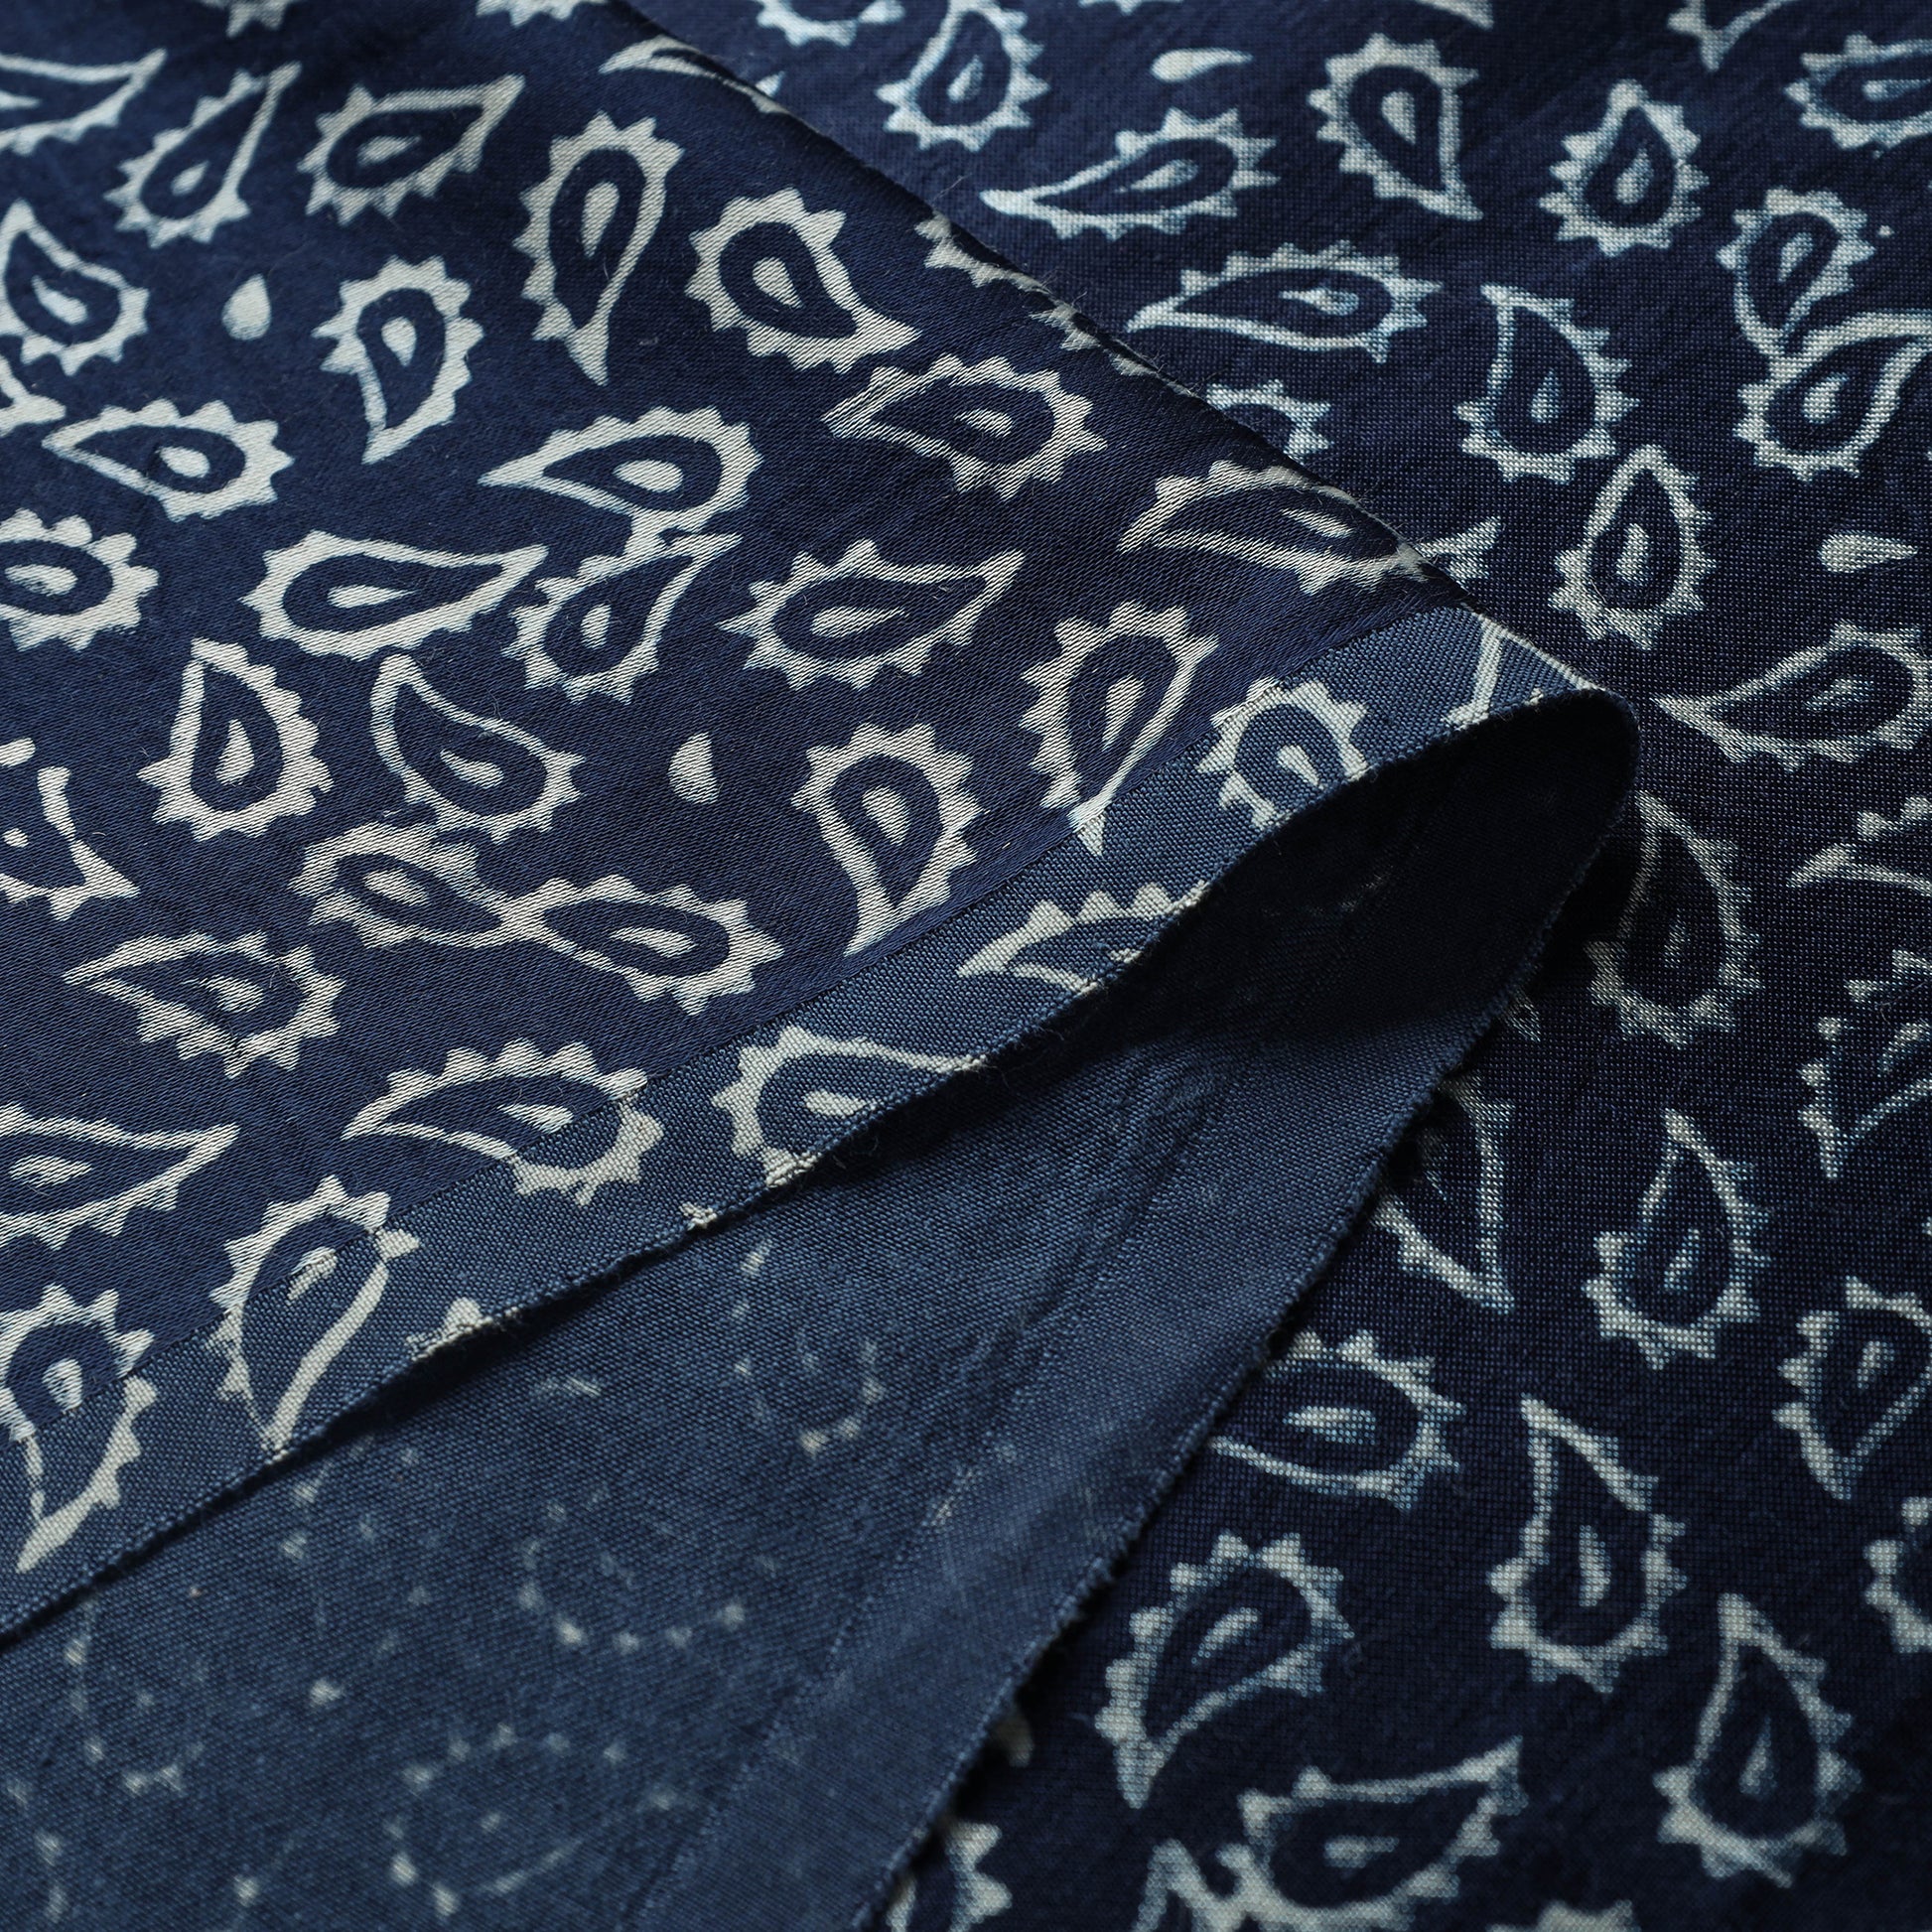 Mashru Silk Kutch Hand Block Printed Fabric